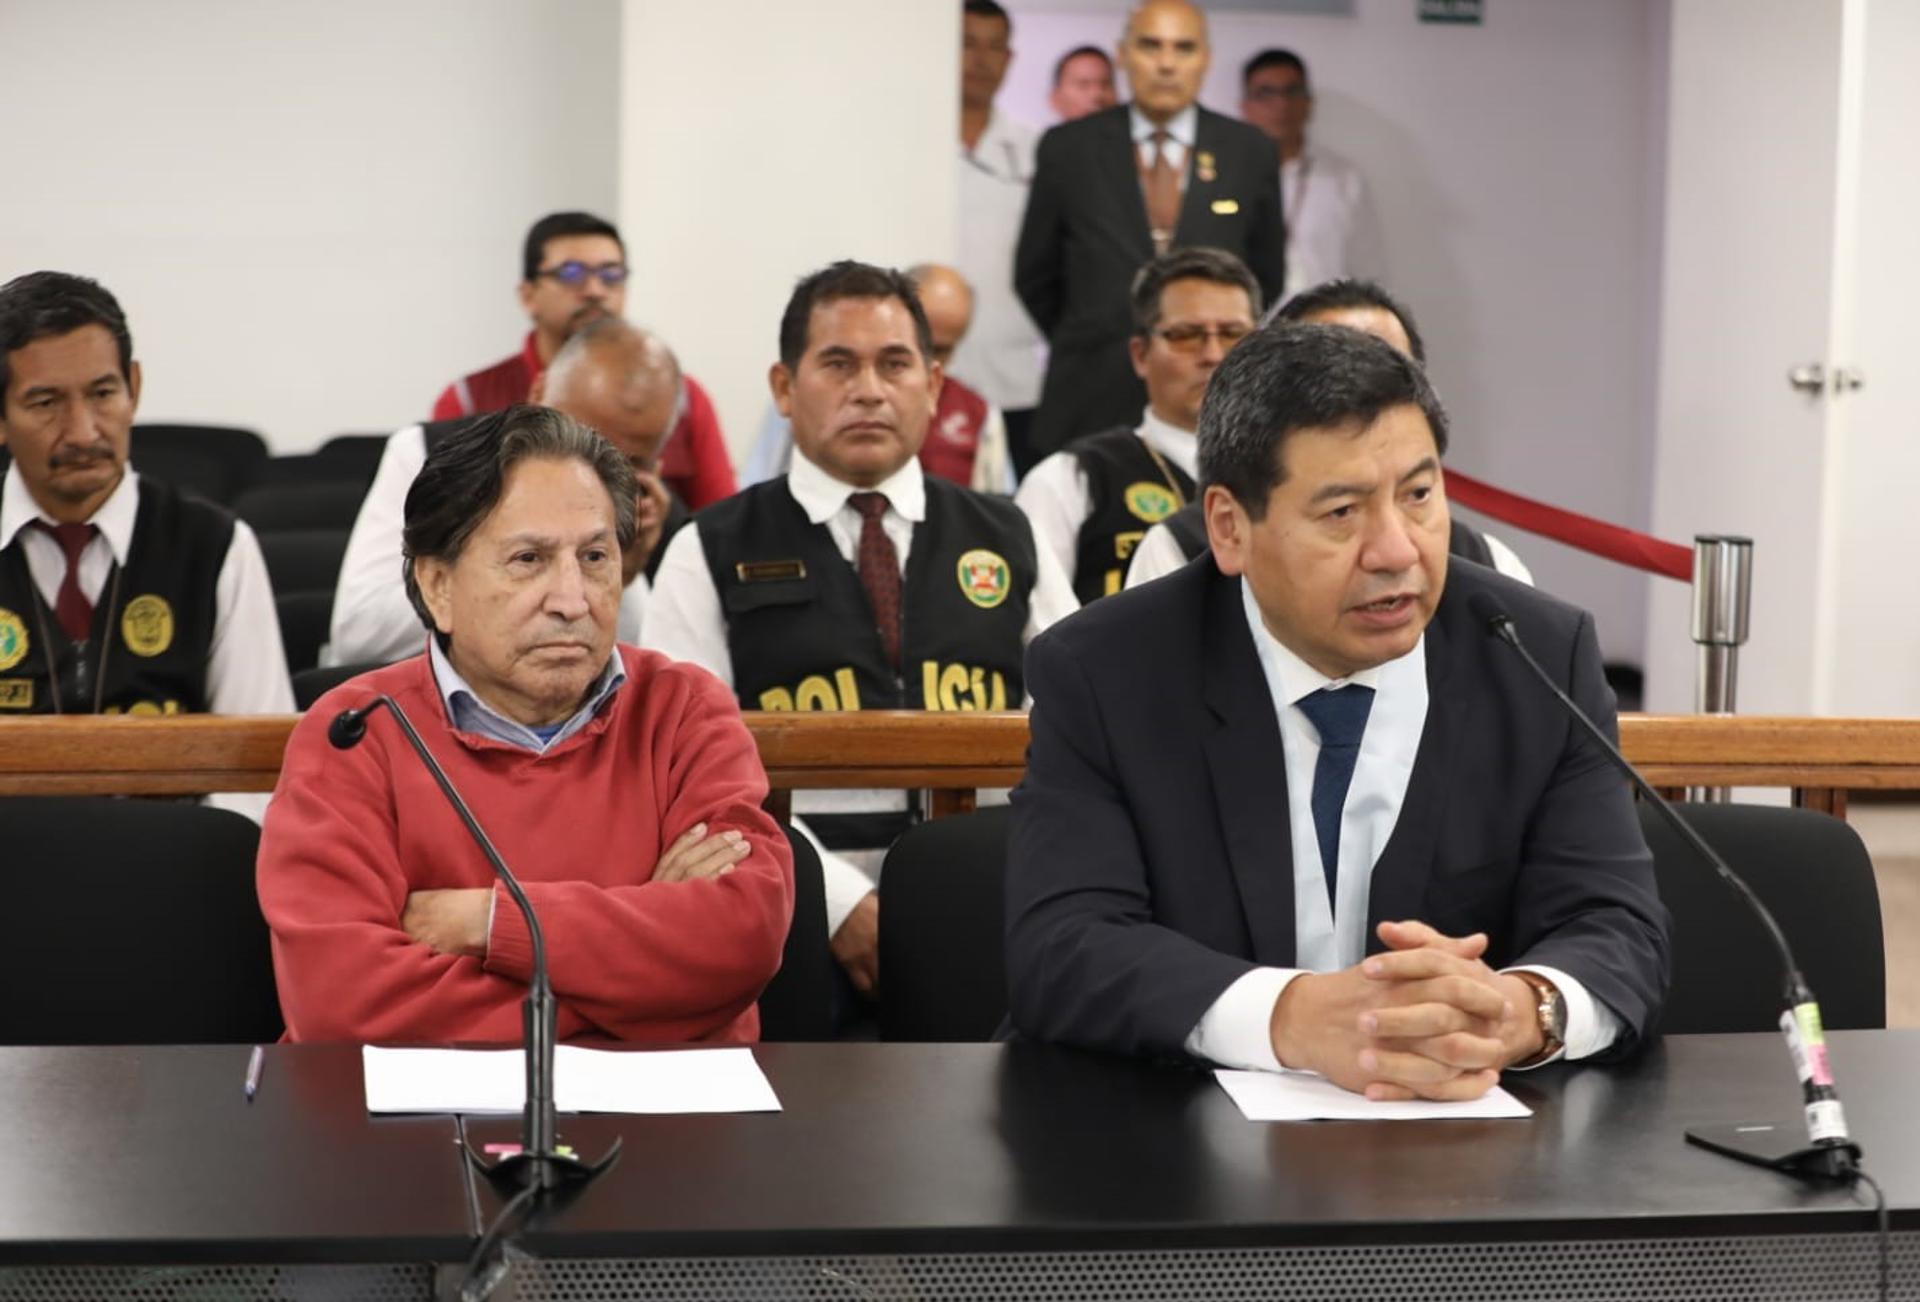 El expresidente Toledo, recluido en la misma cárcel que Fujimori y Castillo